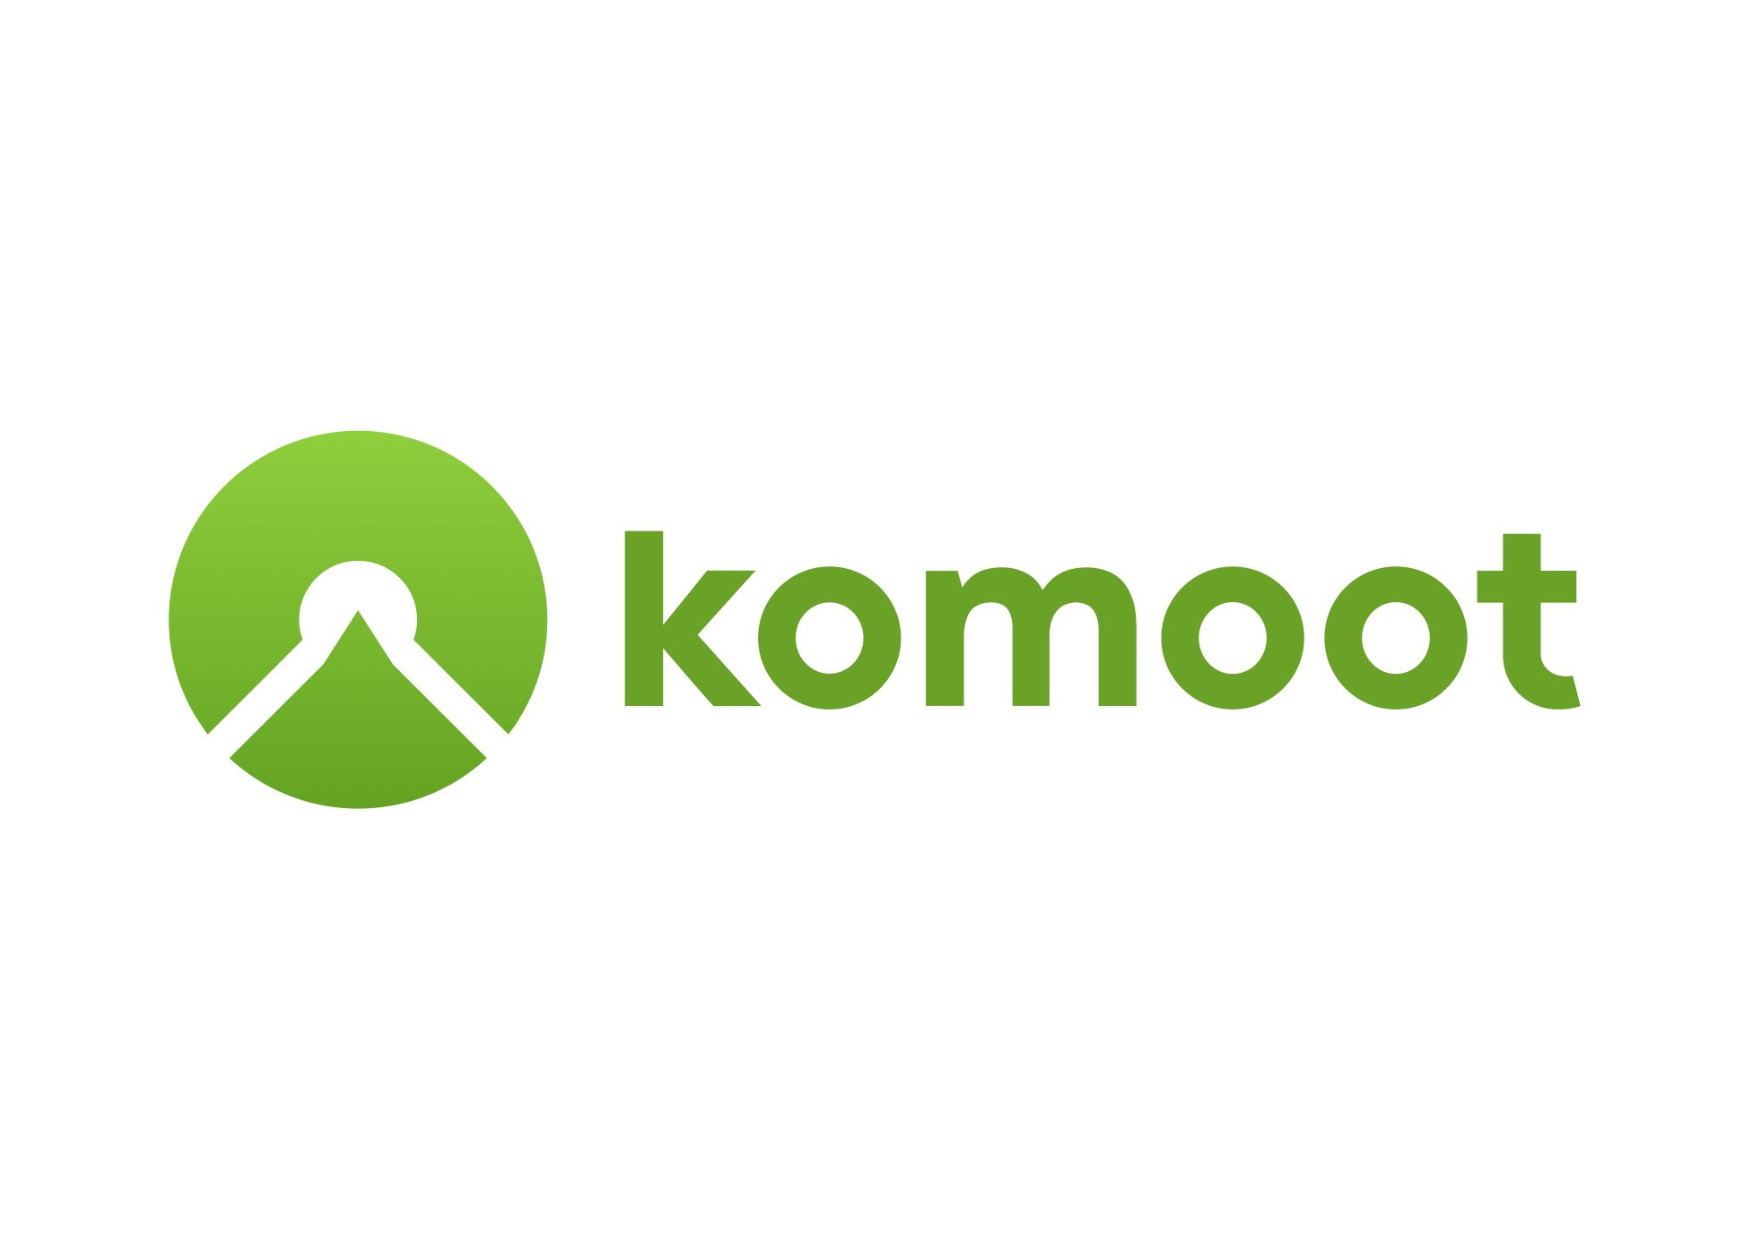 Logo komoot